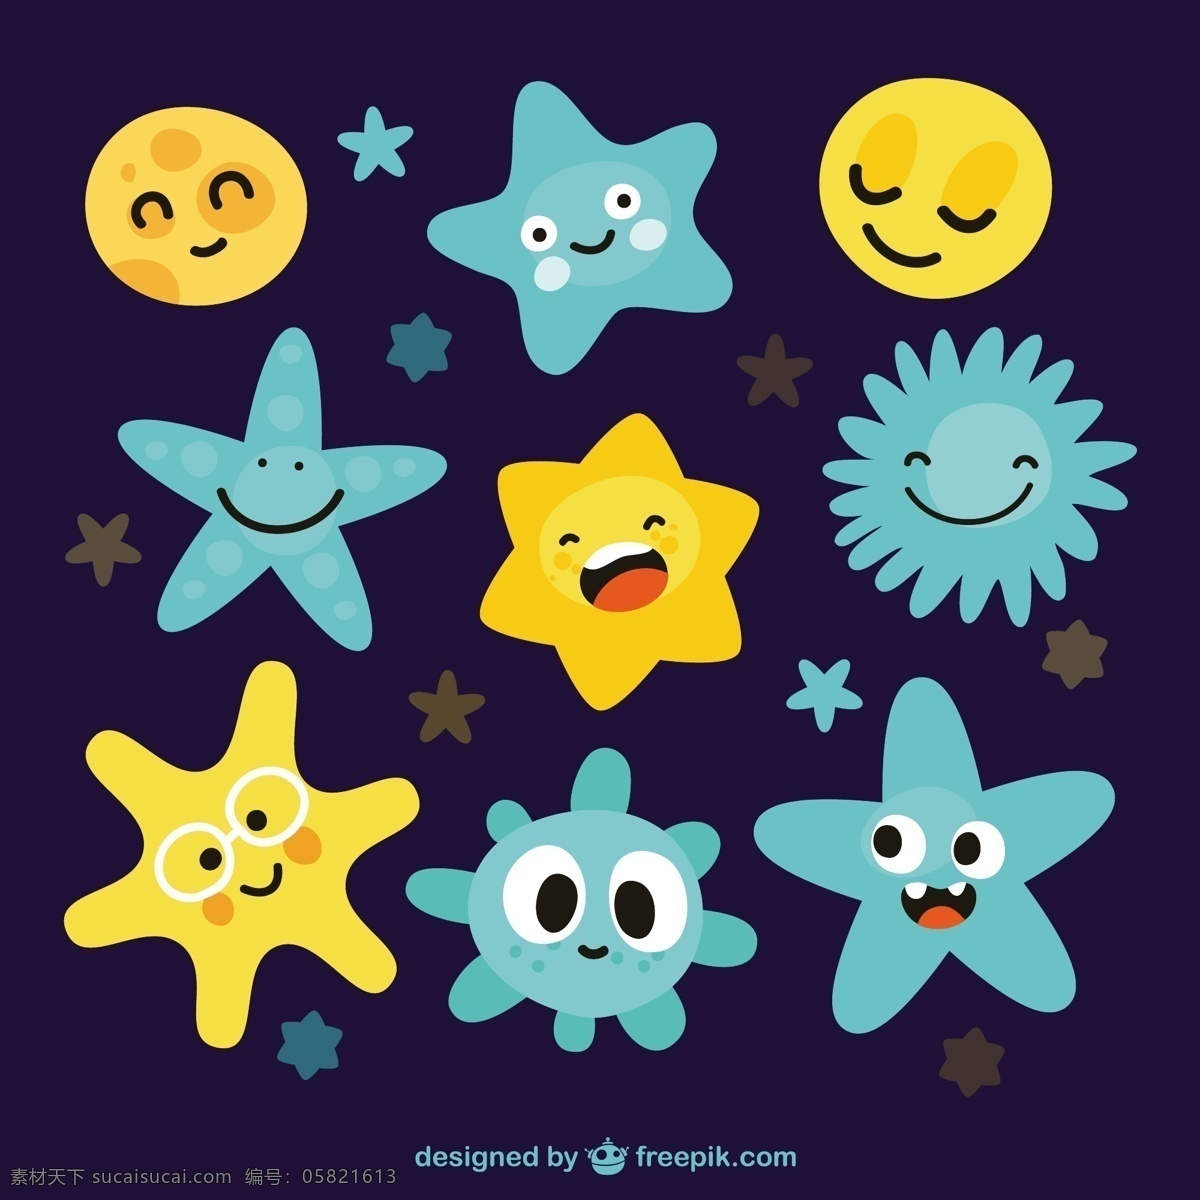 星星插图 明星 太阳 天空 卡通 星光 可爱 黄色 插图 蓝色 繁星 各种品种